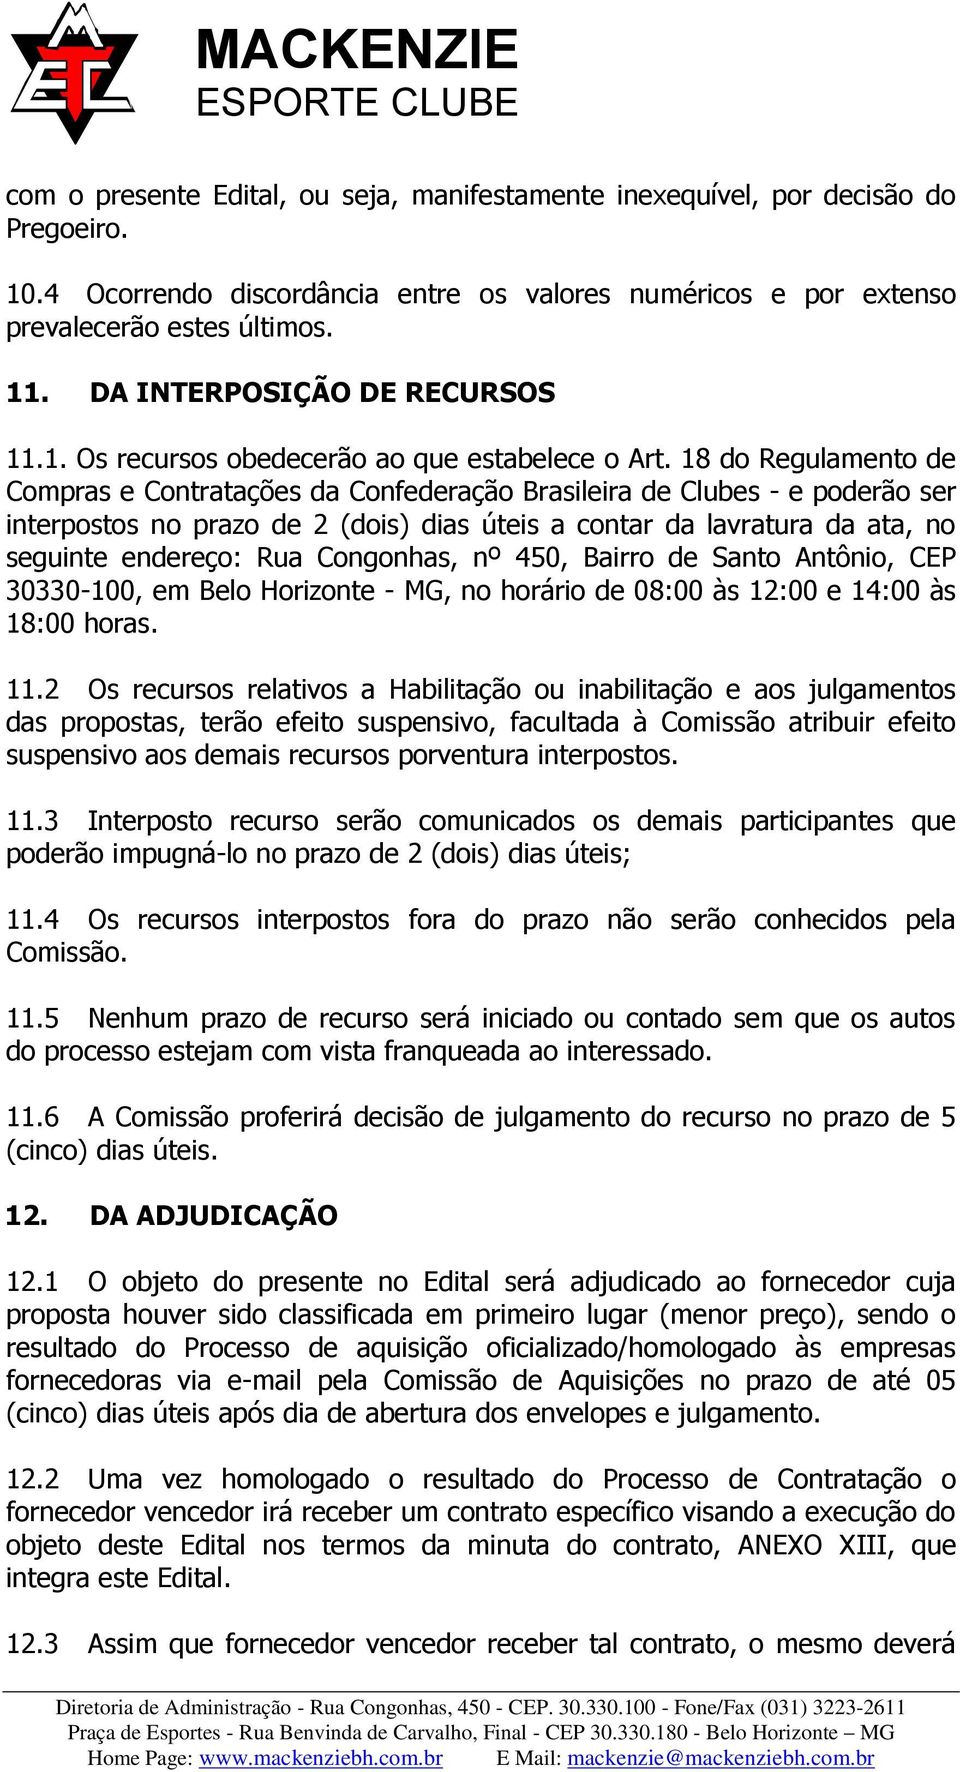 18 do Regulamento de Compras e Contratações da Confederação Brasileira de Clubes - e poderão ser interpostos no prazo de 2 (dois) dias úteis a contar da lavratura da ata, no seguinte endereço: Rua